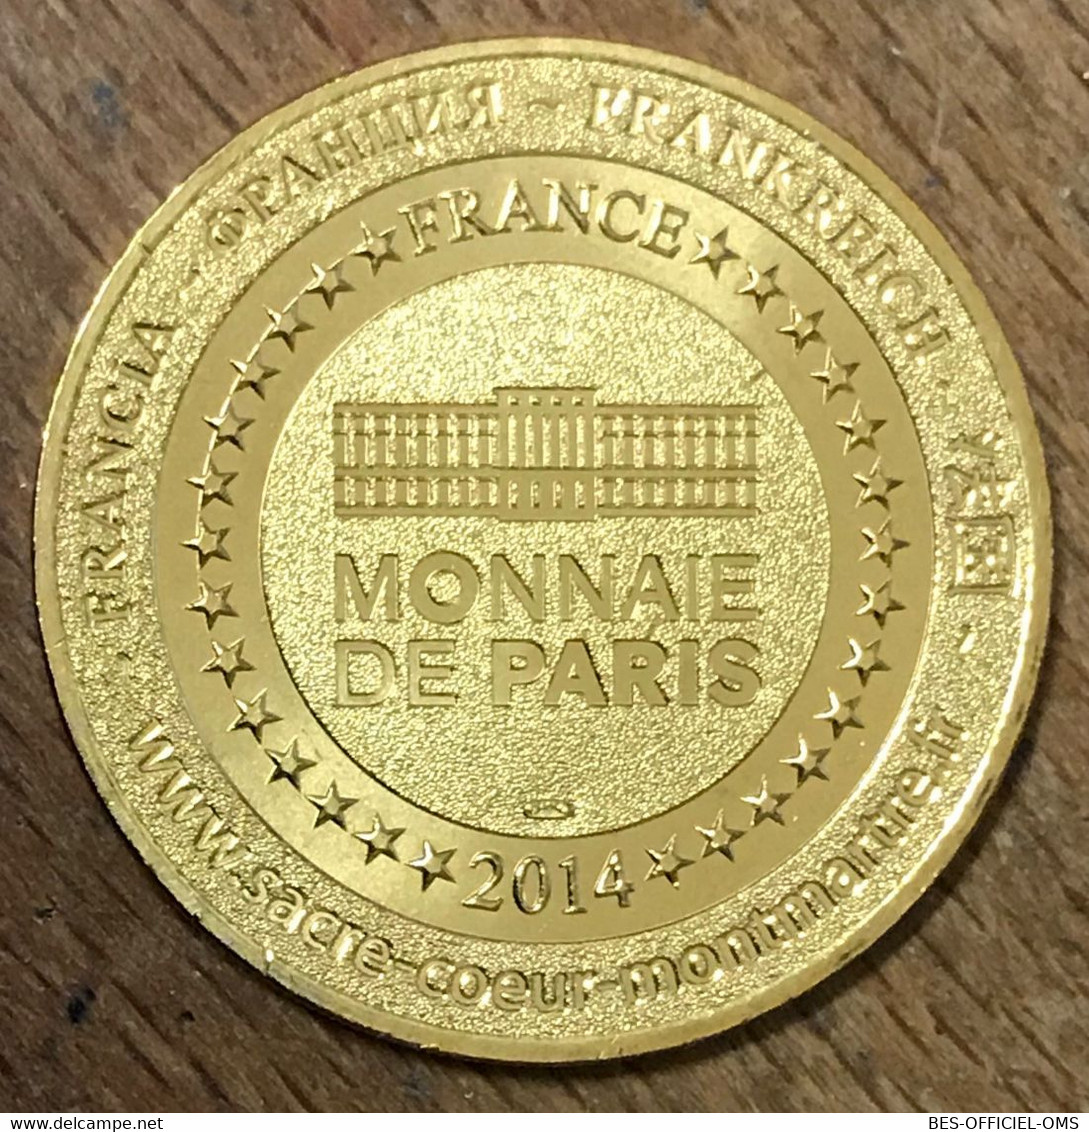 75018 BASILIQUE DU SACRÉ-COEUR MDP 2014 MÉDAILLE MONNAIE DE PARIS JETON TOURISTIQUE MEDALS COINS TOKENS - 2014